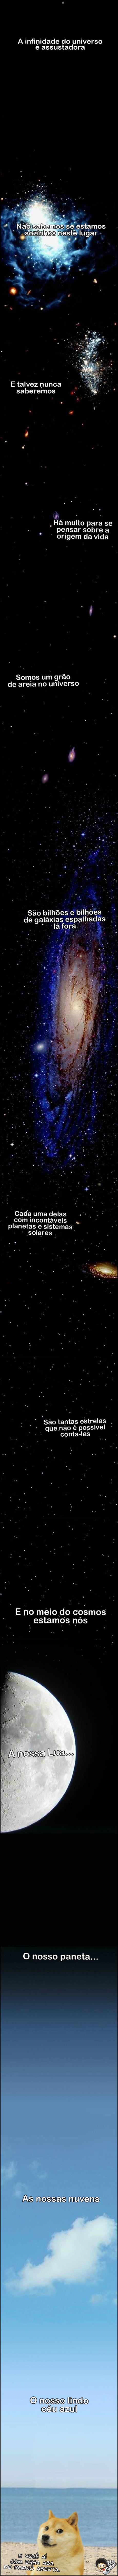 UNIVERSO Vamos pensar um pouco sobre a imensidão do universo